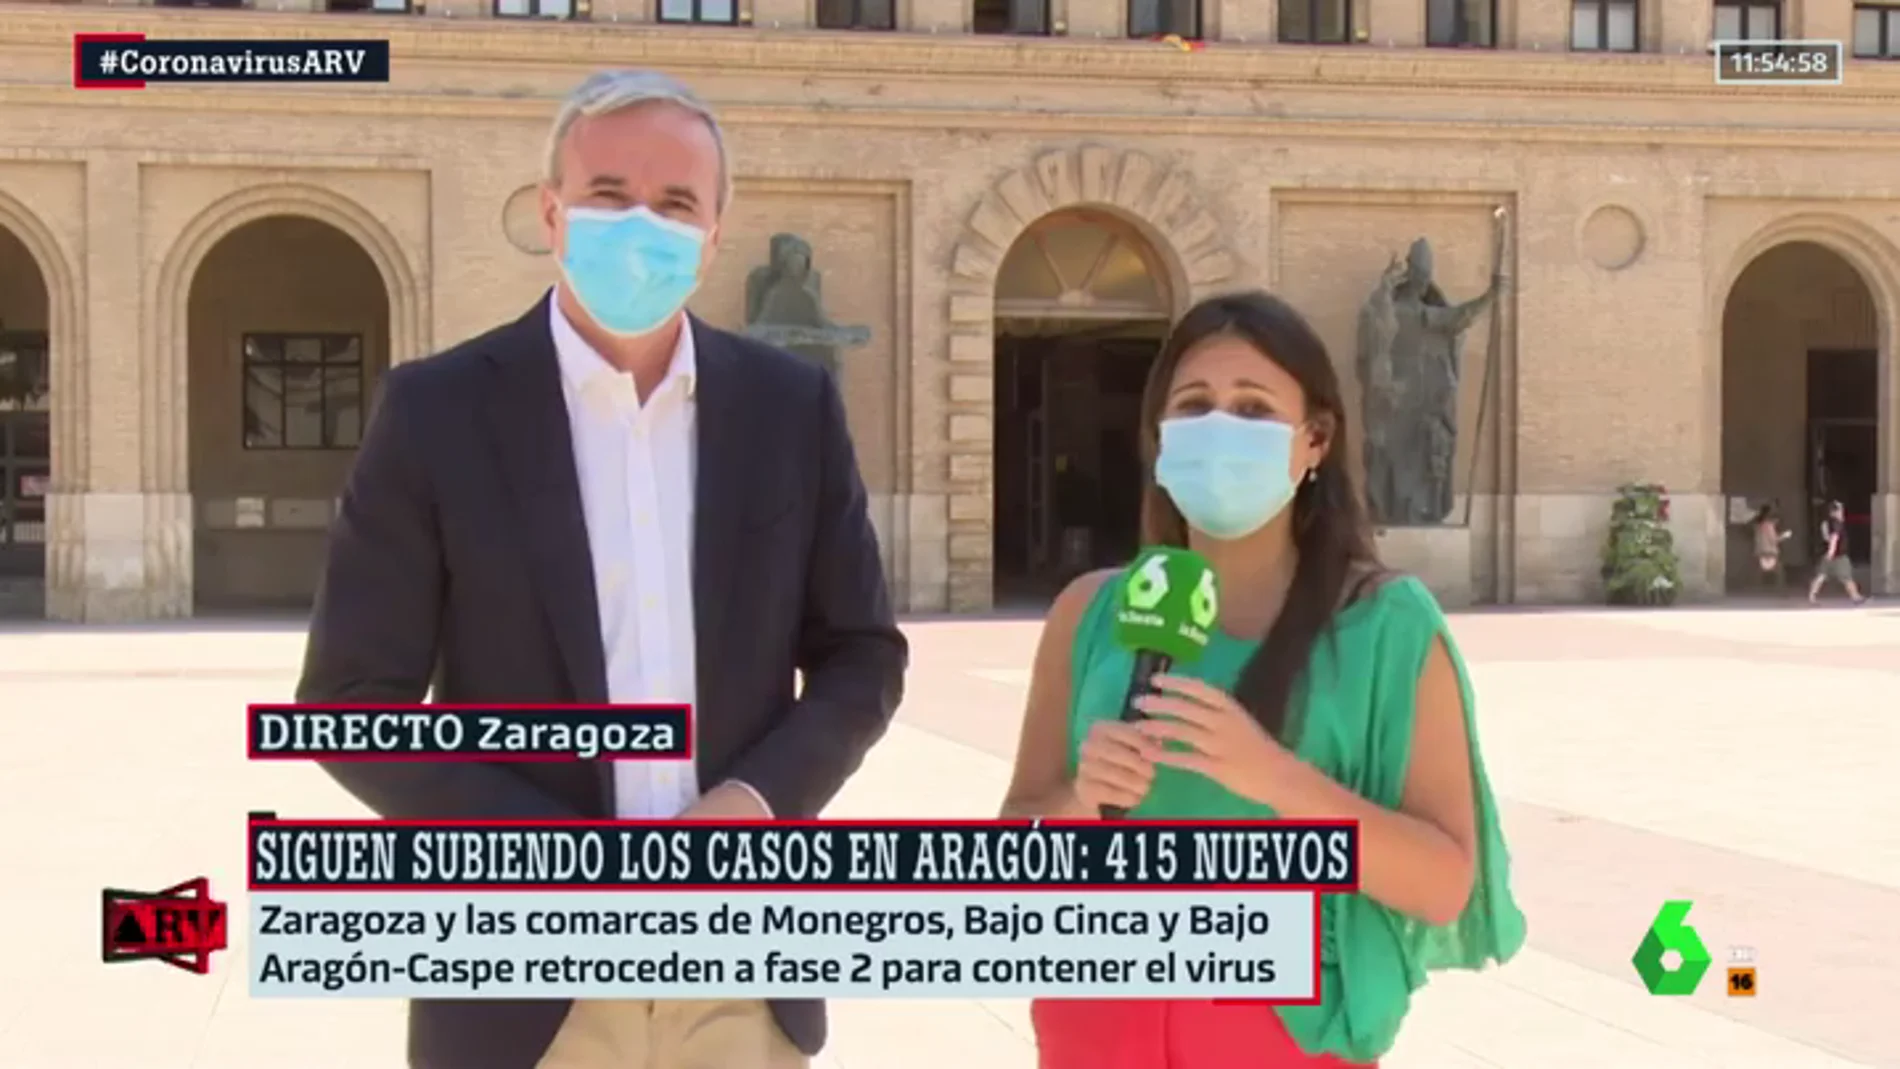 El alcalde de Zaragoza, preocupado ante el aumento de casos: "La Atención Primaria puede desbordarse"